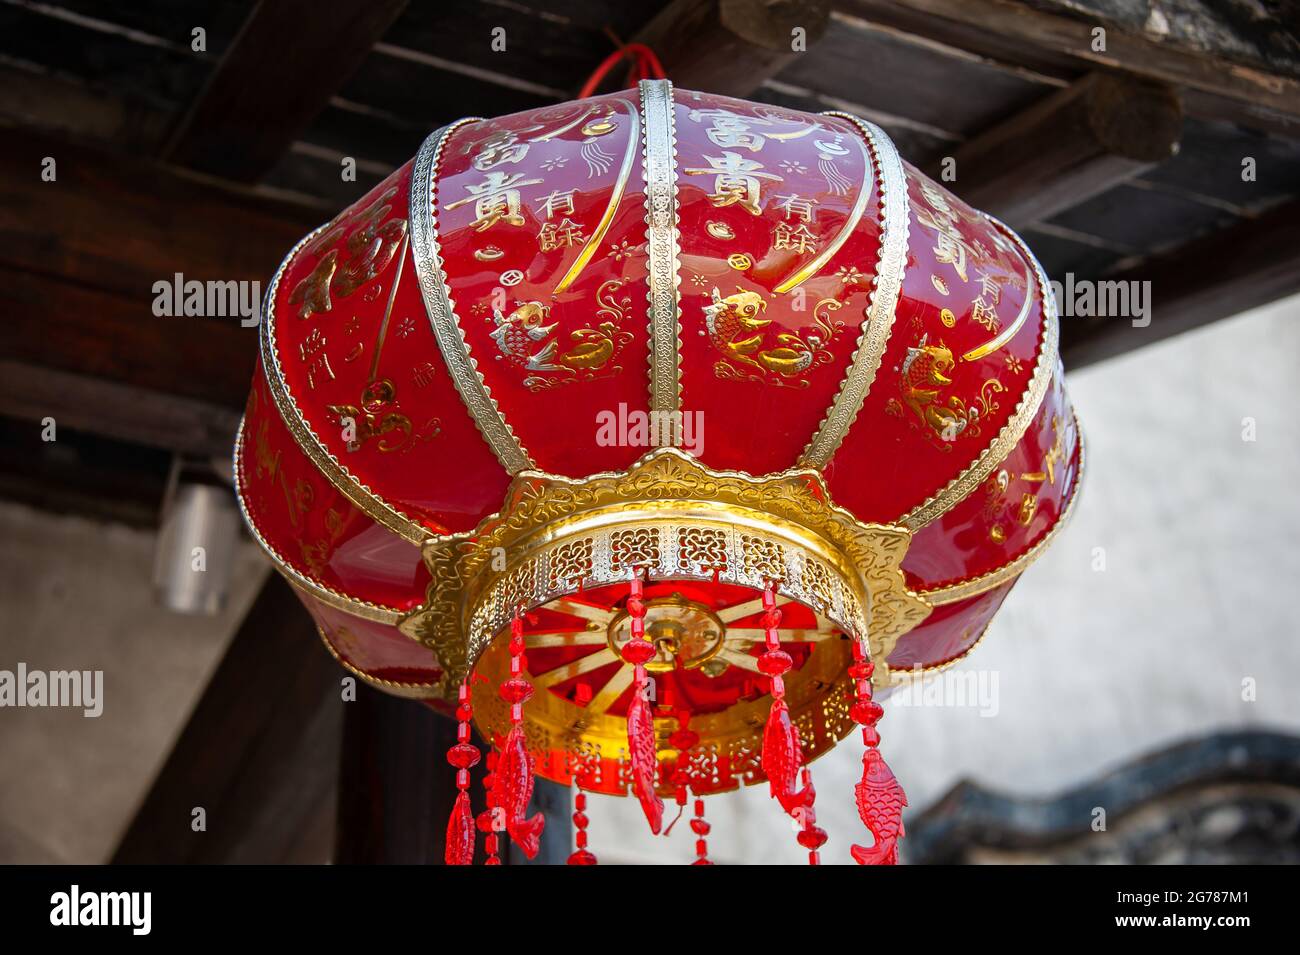 Jiangsu: Linterna decorativa china colgando de un edificio antiguo. Estas farolillos rojos se ven ampliamente en toda China, a menudo celebrando festivales Foto de stock